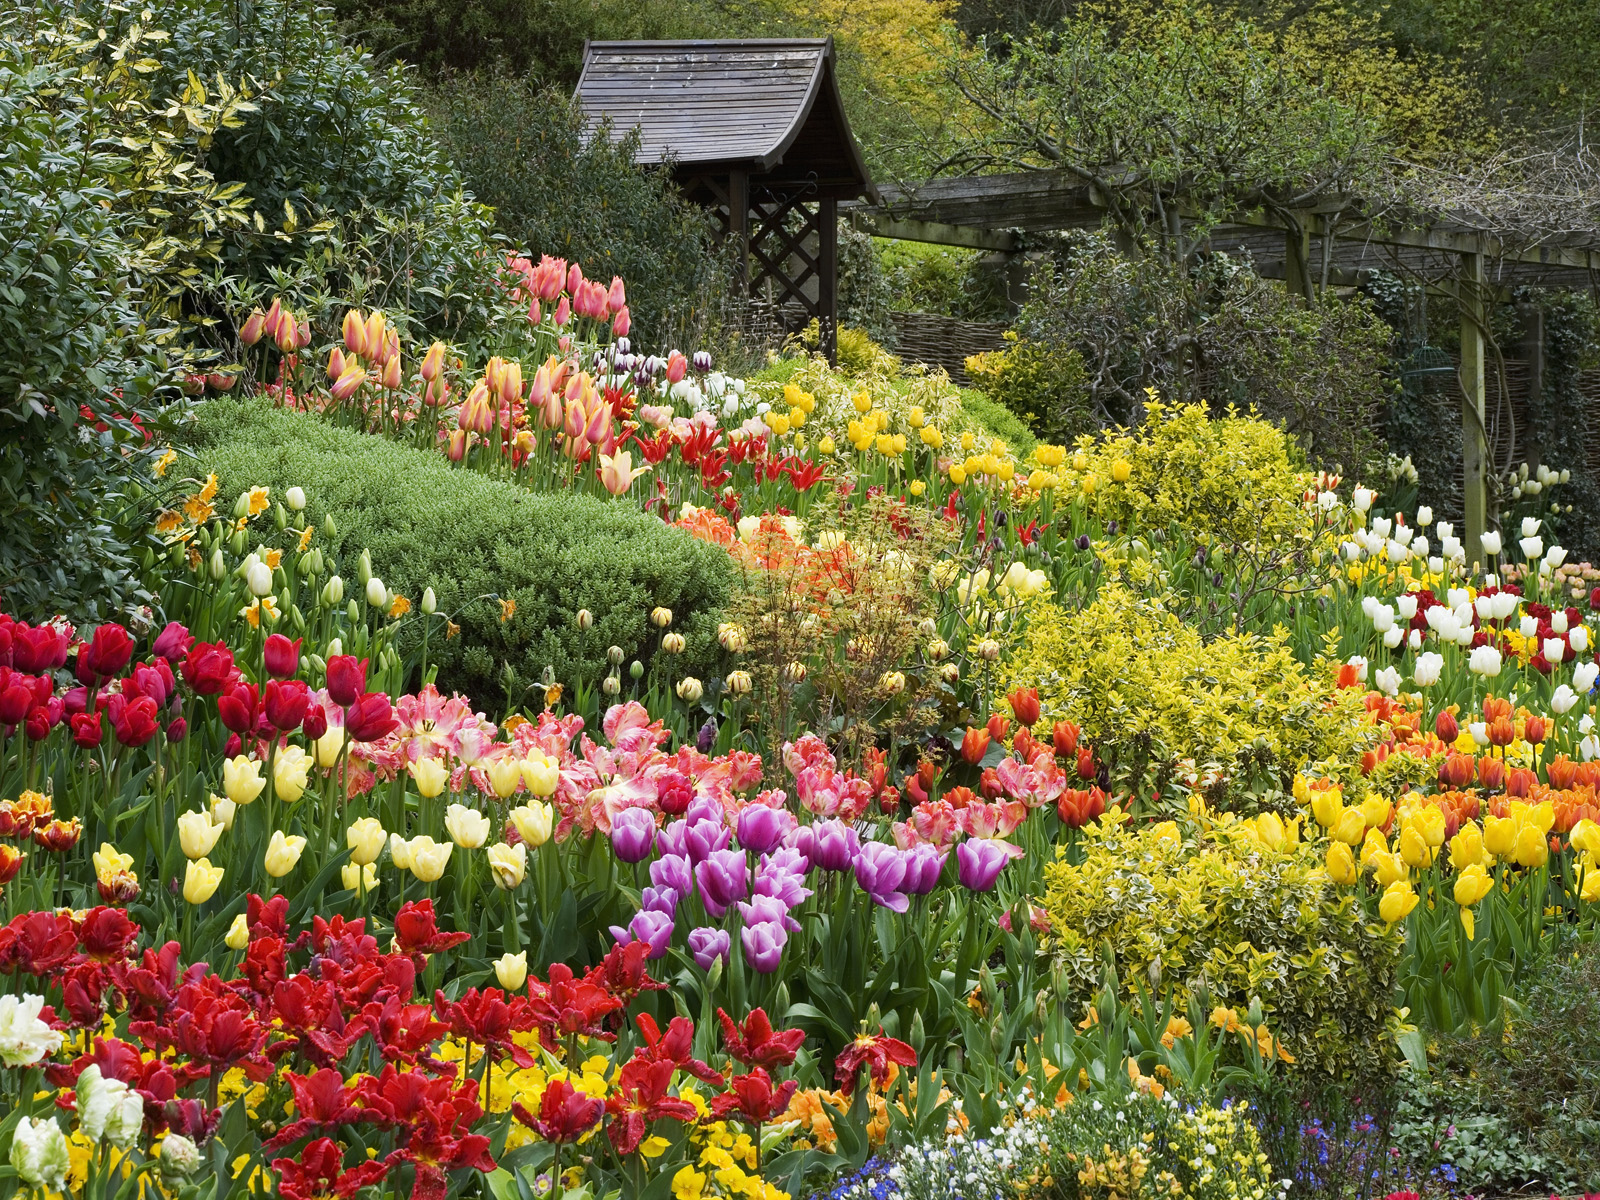 Vườn hoa đẹp nổi tiếng: Nếu bạn đang tìm kiếm một địa điểm tham quan nổi tiếng, đầy lôi cuốn, thì hãy đến với vườn hoa đẹp nổi tiếng này. Được biết đến với những món quà tuyệt vời của thiên nhiên, đó là những bông hoa nở rộ, vườn hoa này sẽ khiến bạn ngạc nhiên về vẻ đẹp tự nhiên tuyệt đẹp.